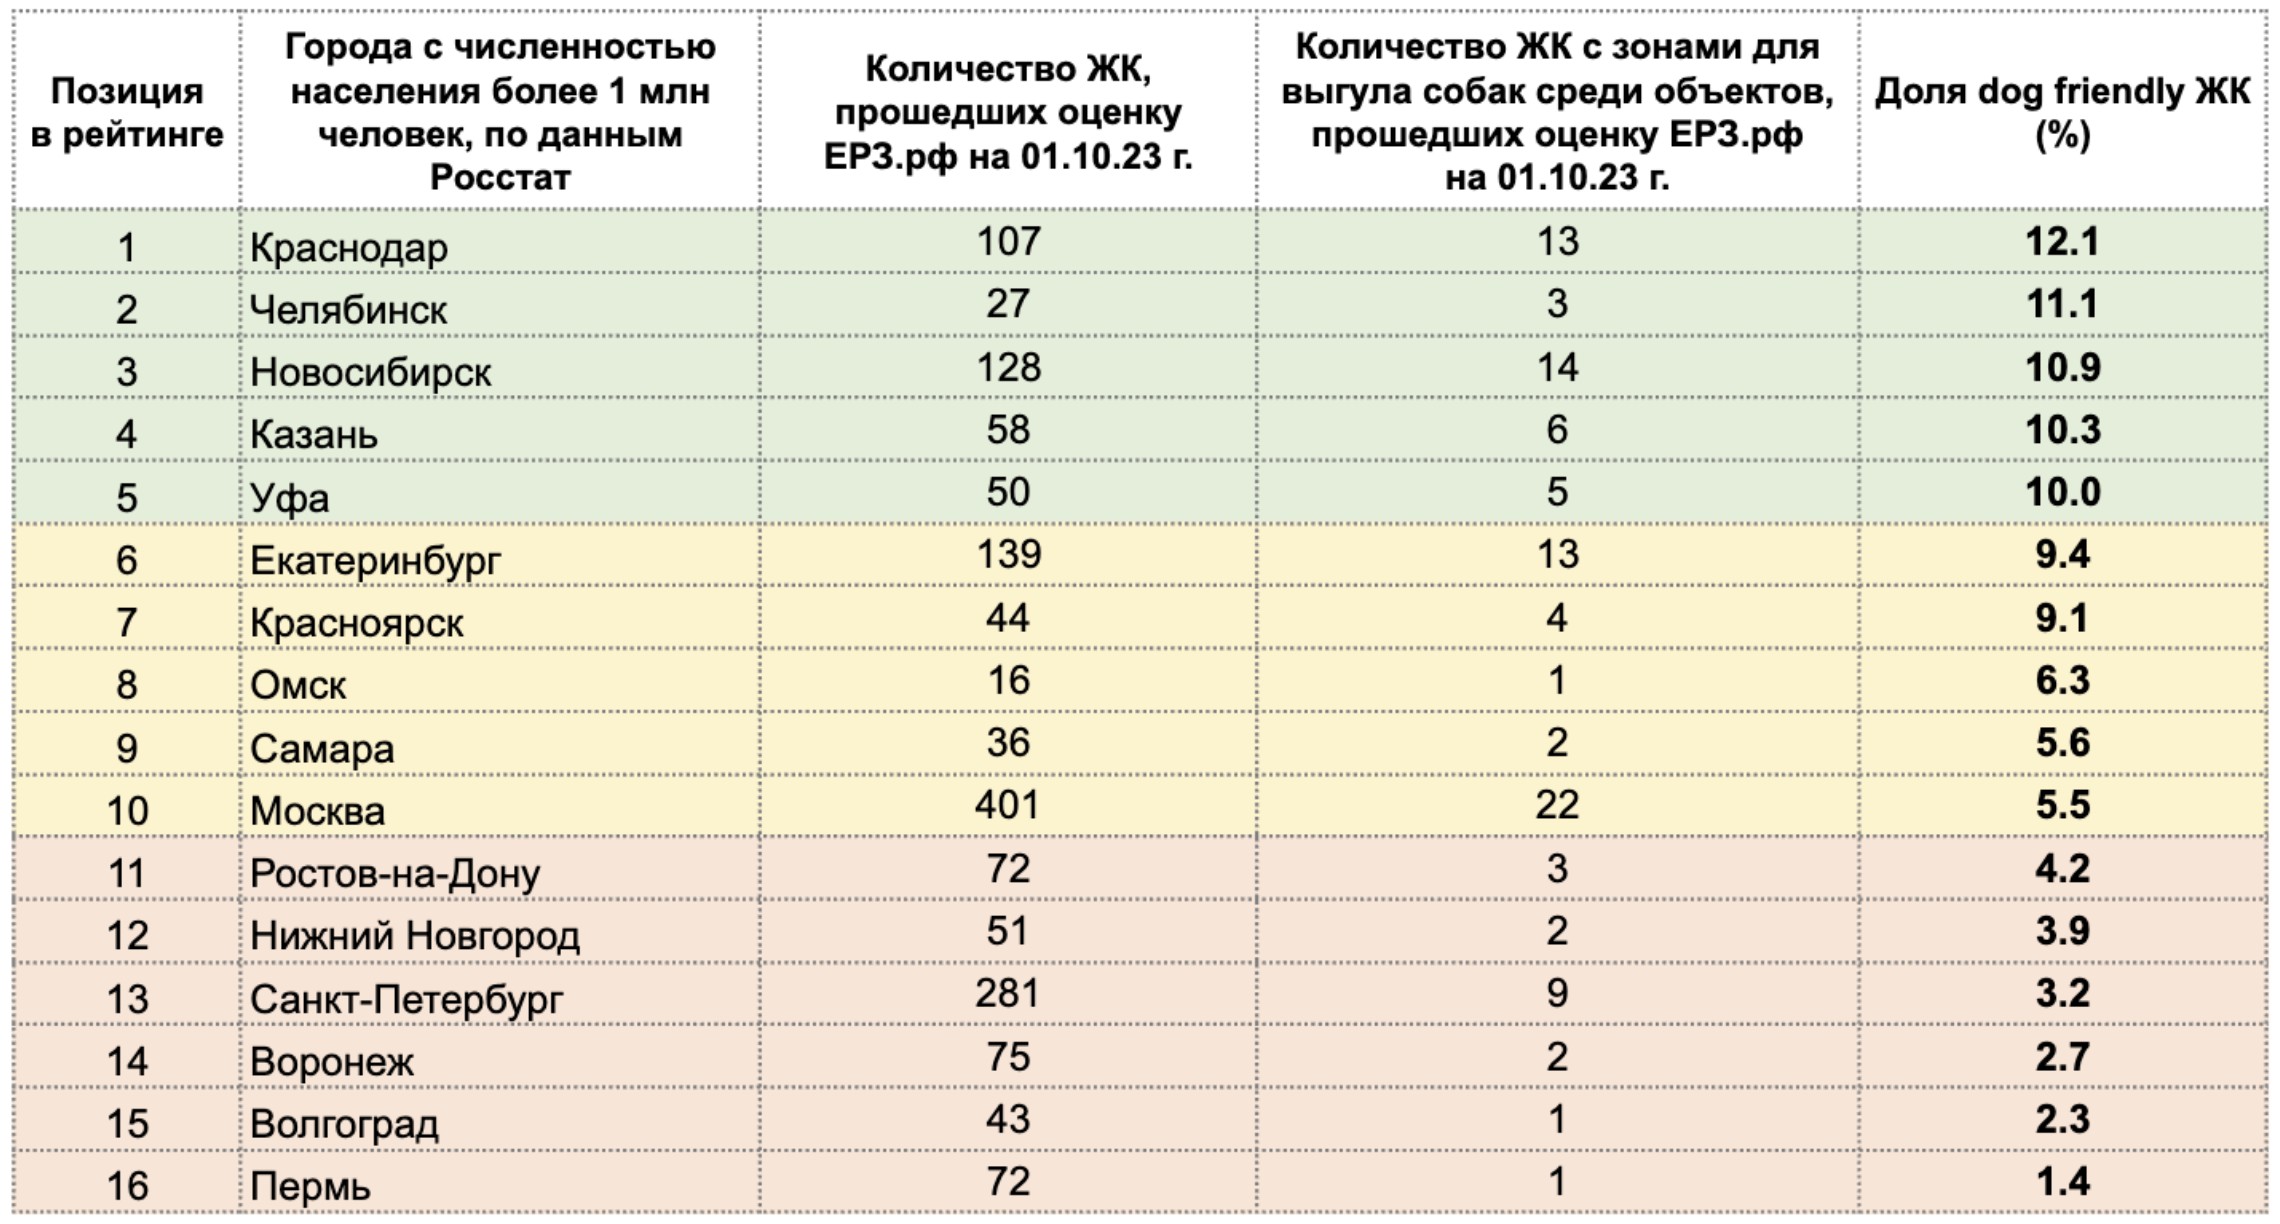 Бюро Atlas составило рейтинг городов России по доле дог-френдли новостроек